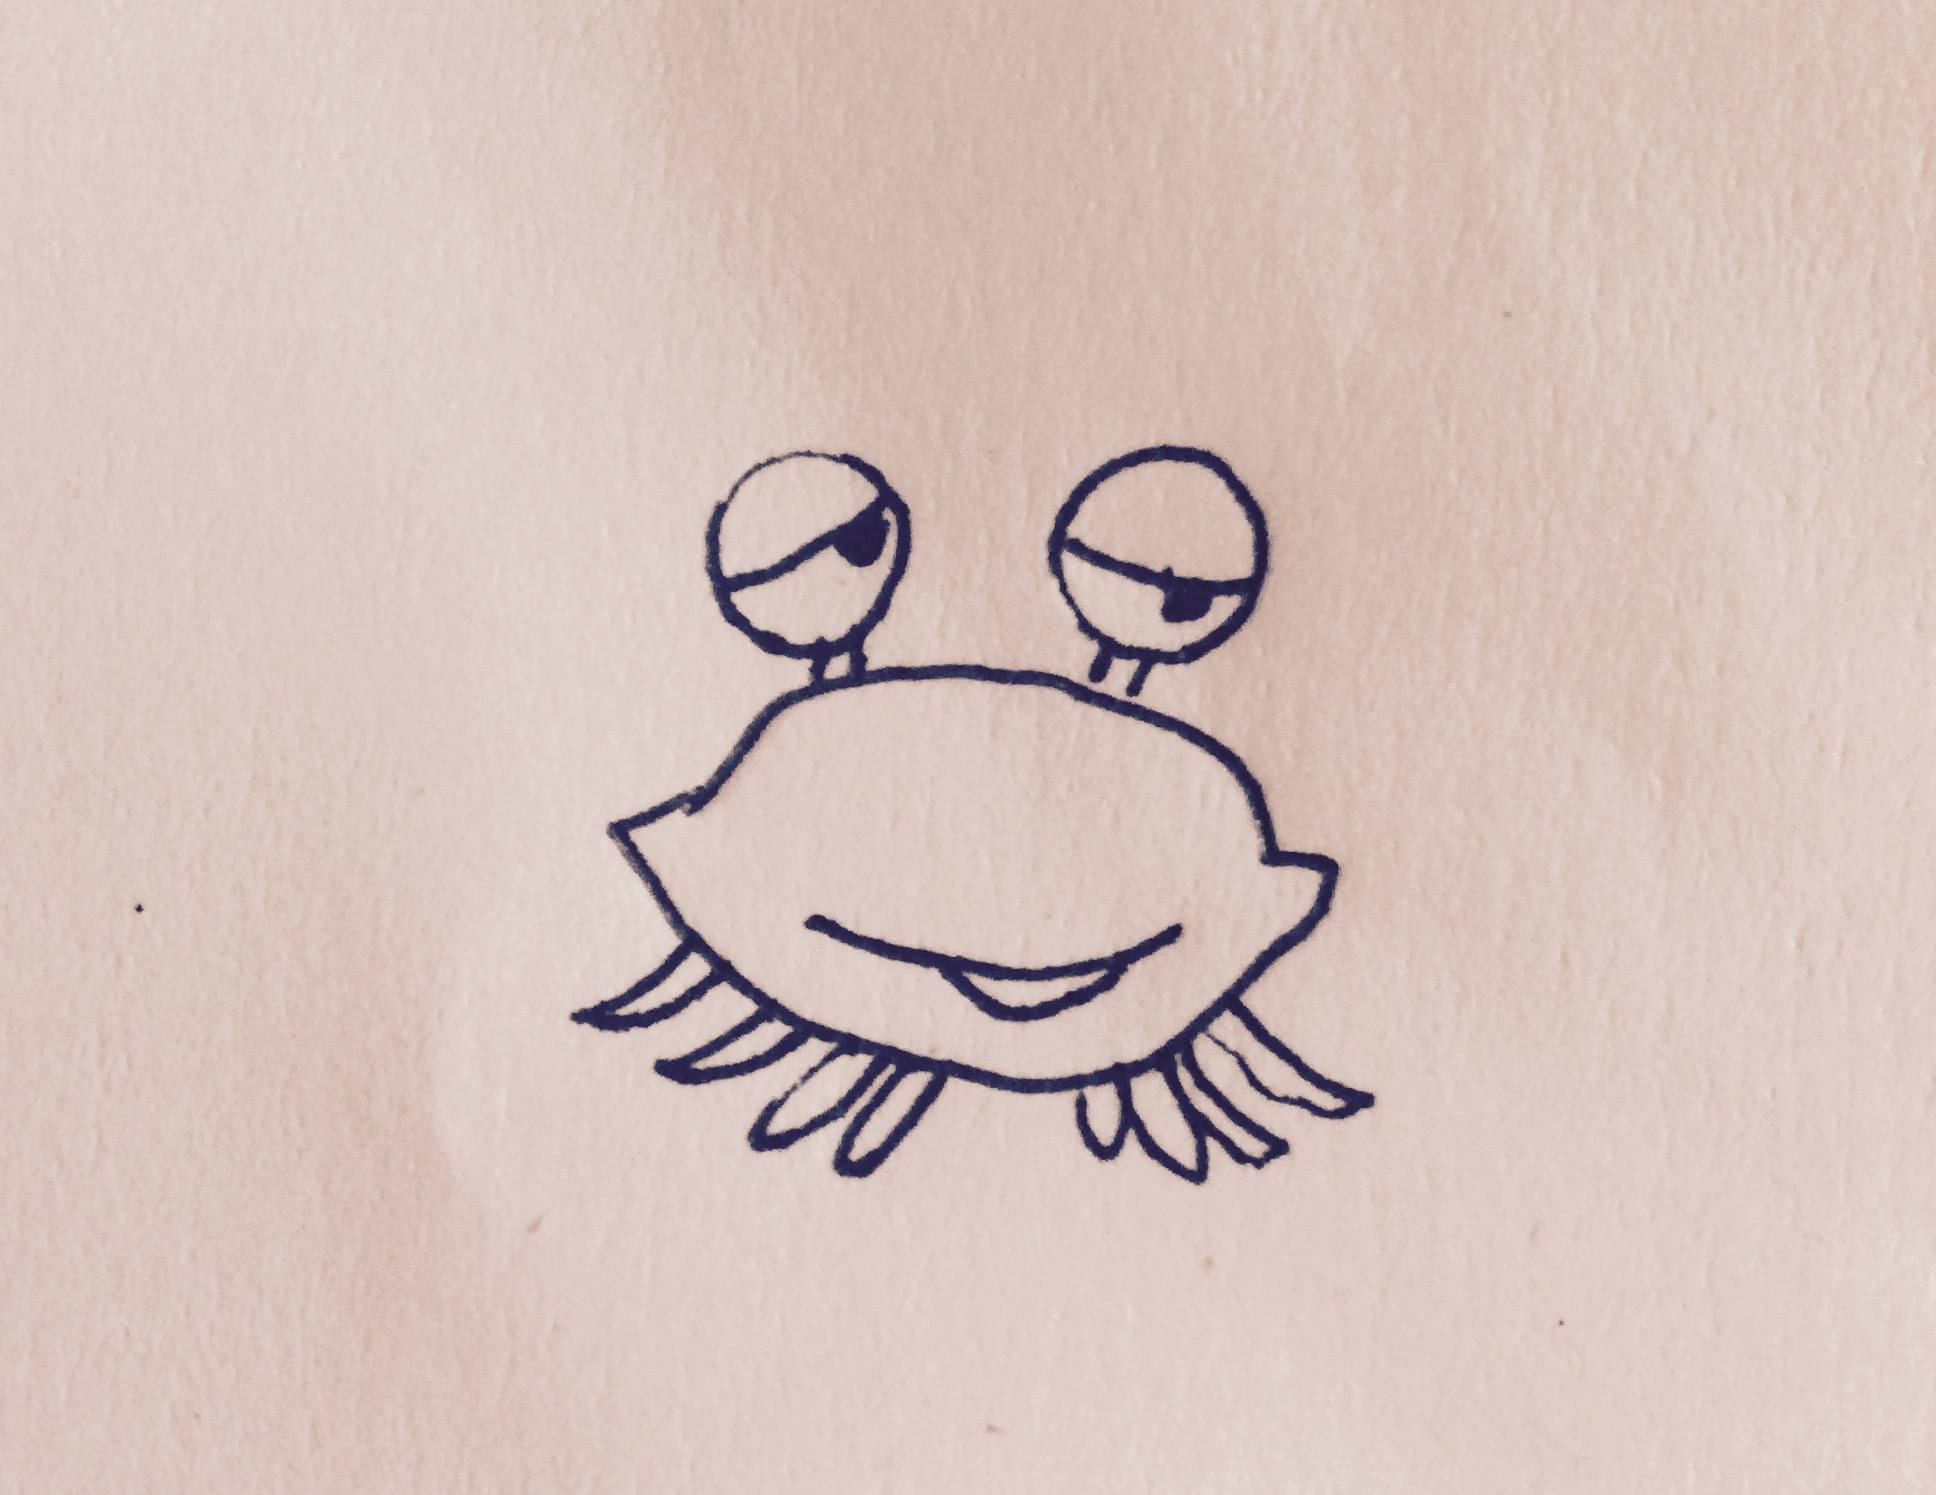 螃蟹的种类简笔画图片